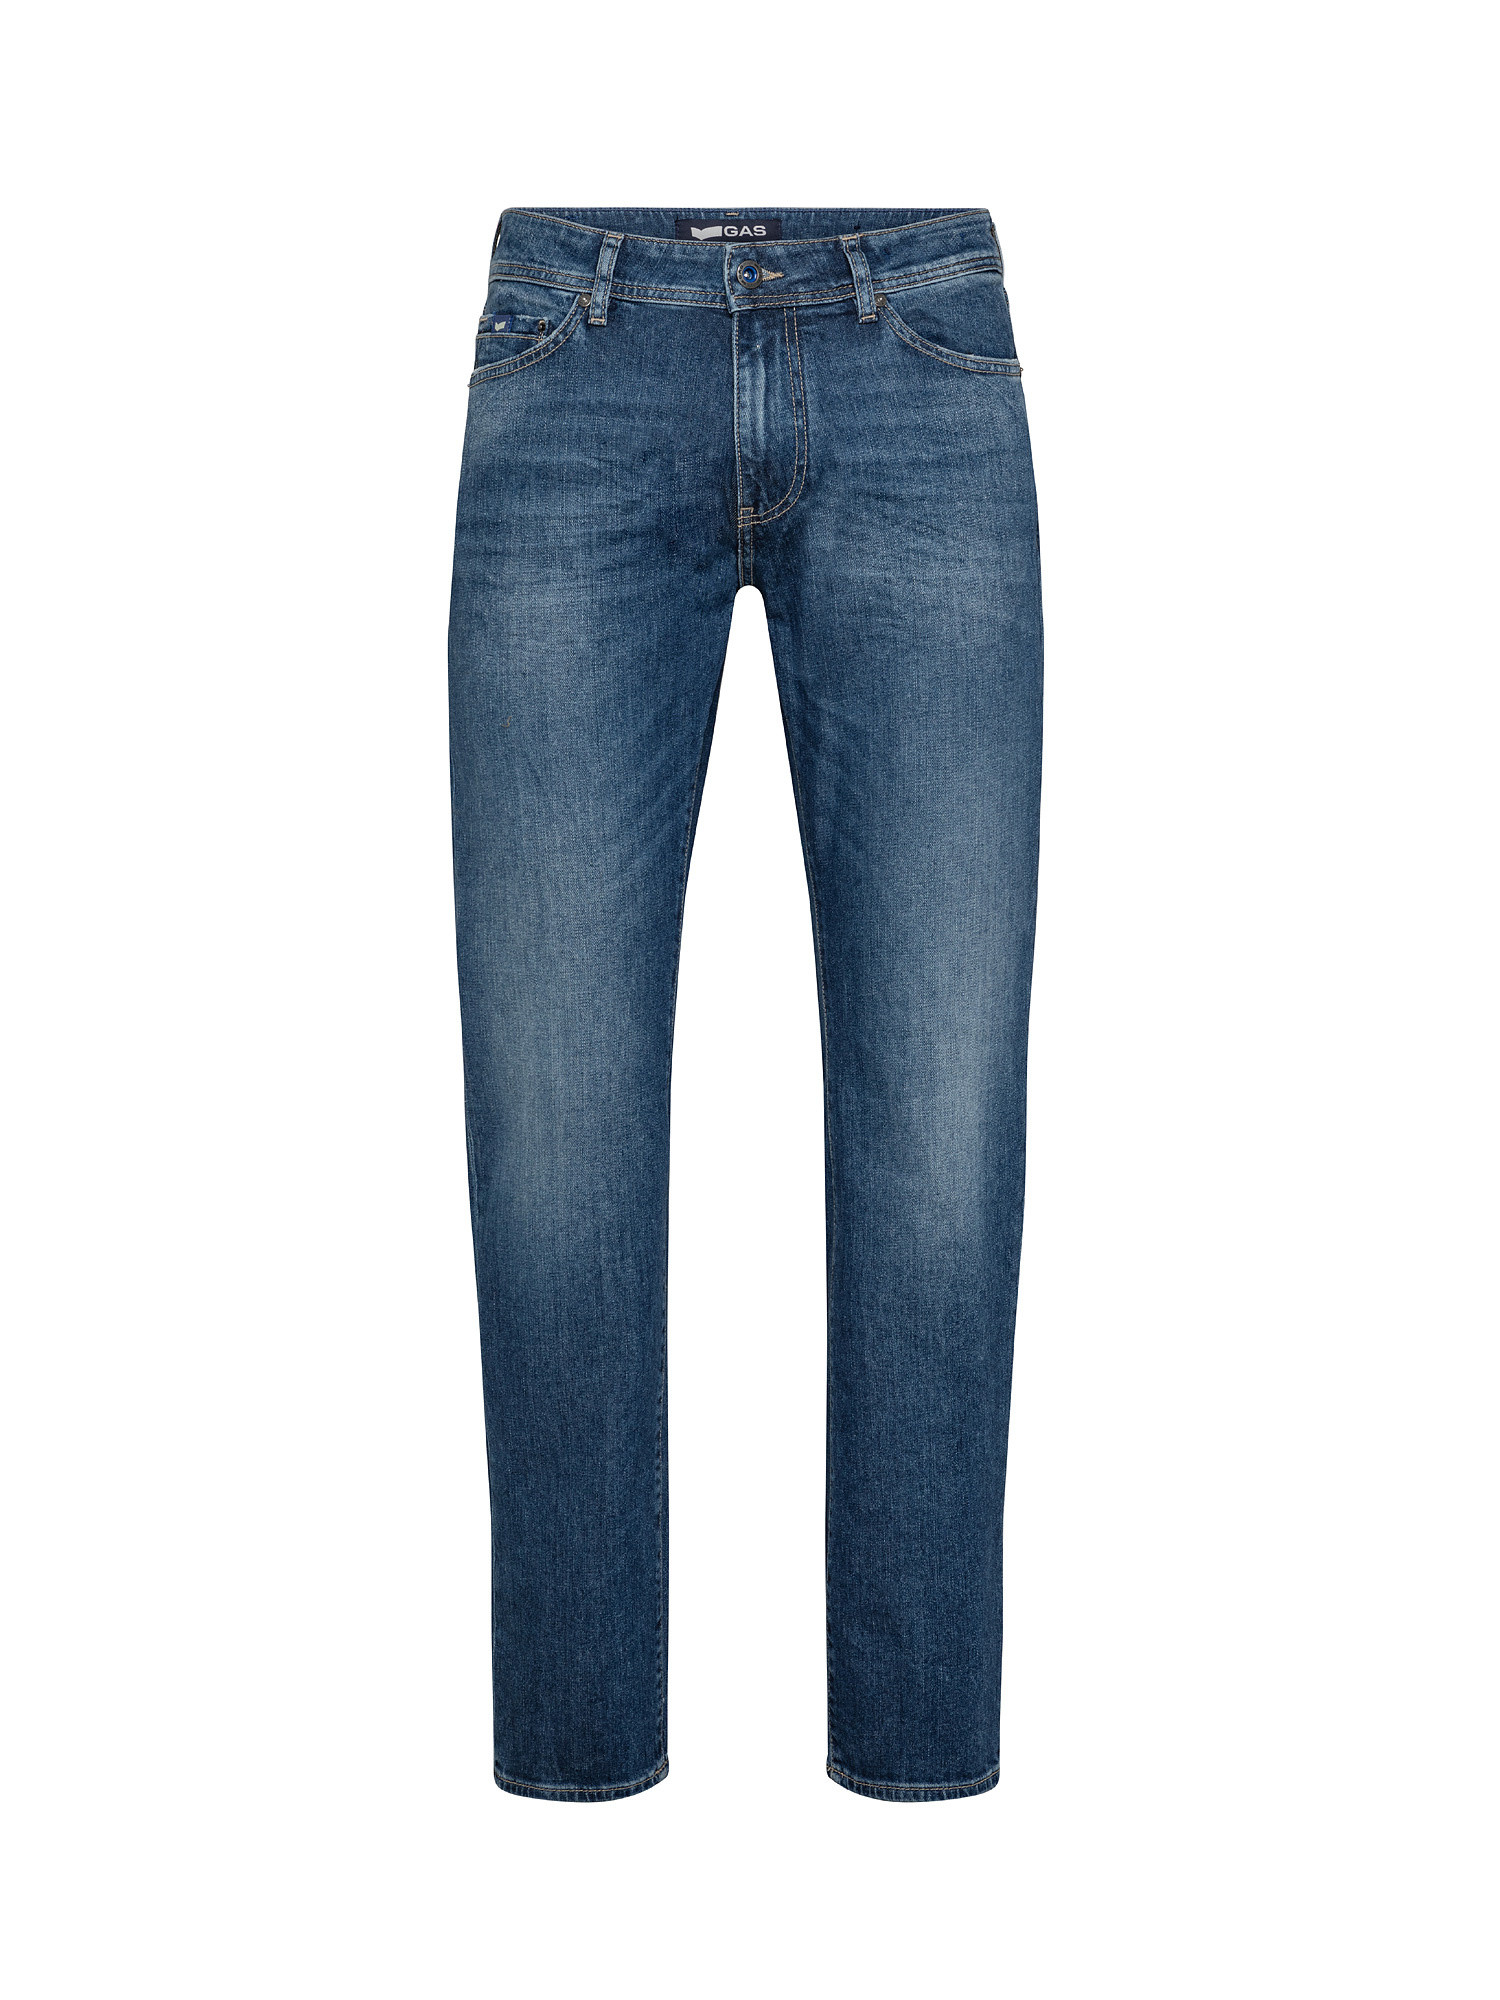 Jeans slim elasticizzati, Denim, large image number 0